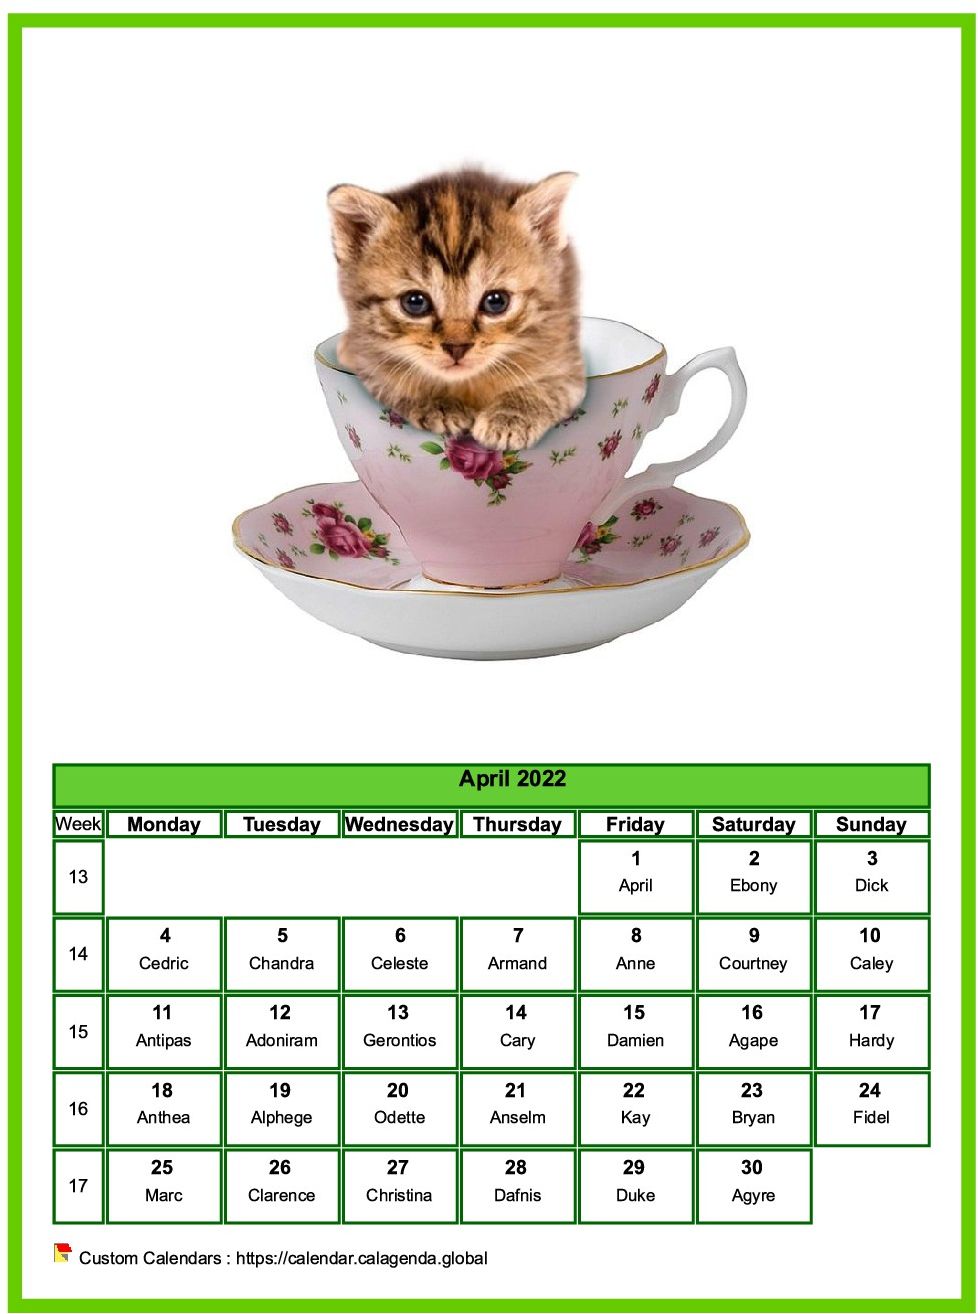 Calendar April 2022 cats